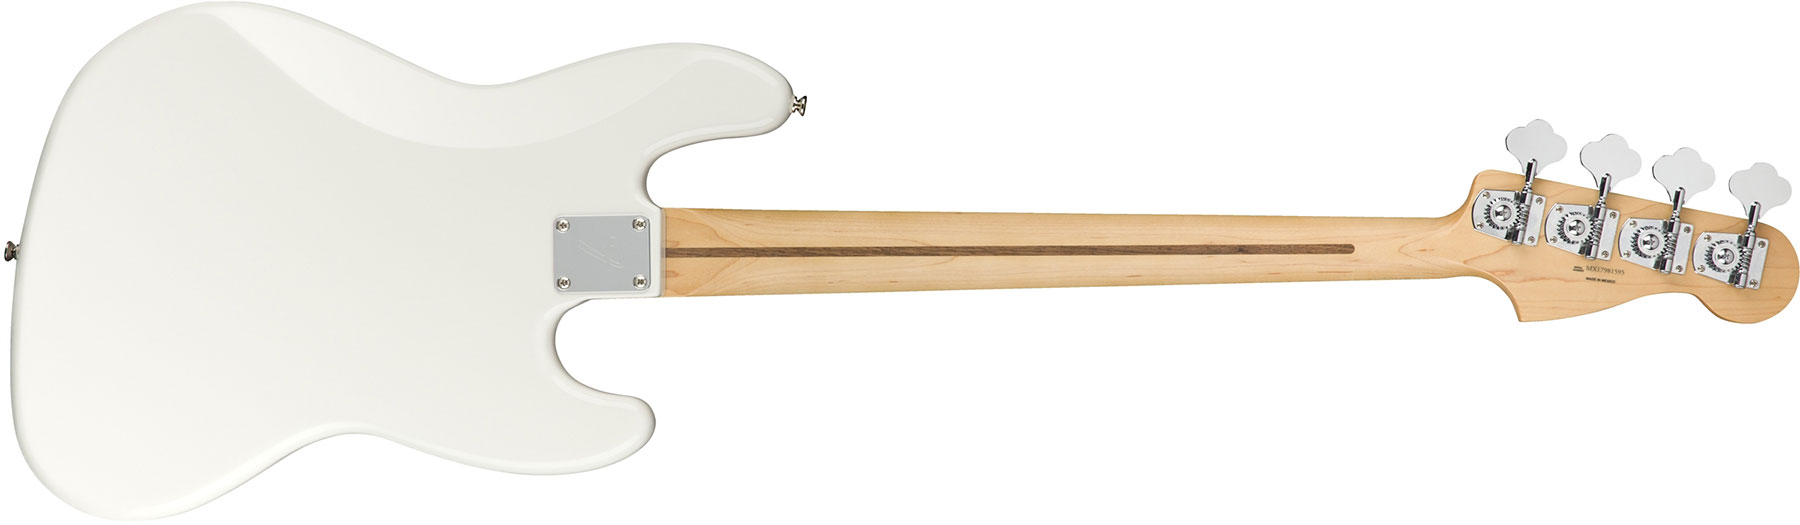 Fender Jazz Bass Player Lh Gaucher Mex Mn - Polar White - Solid body elektrische bas - Variation 1